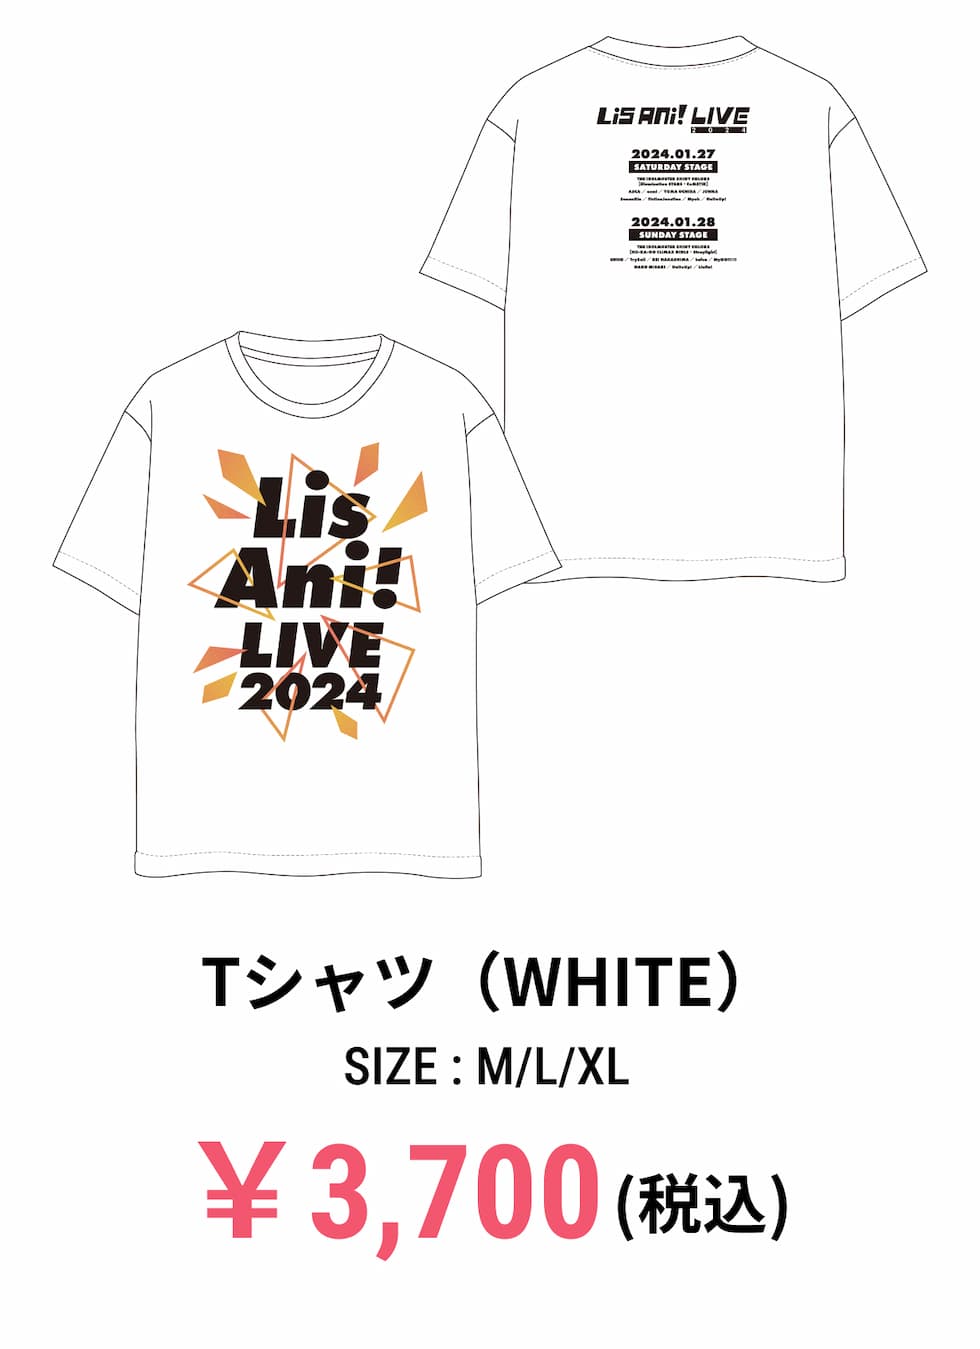 Tシャツ COLOR:WHITE